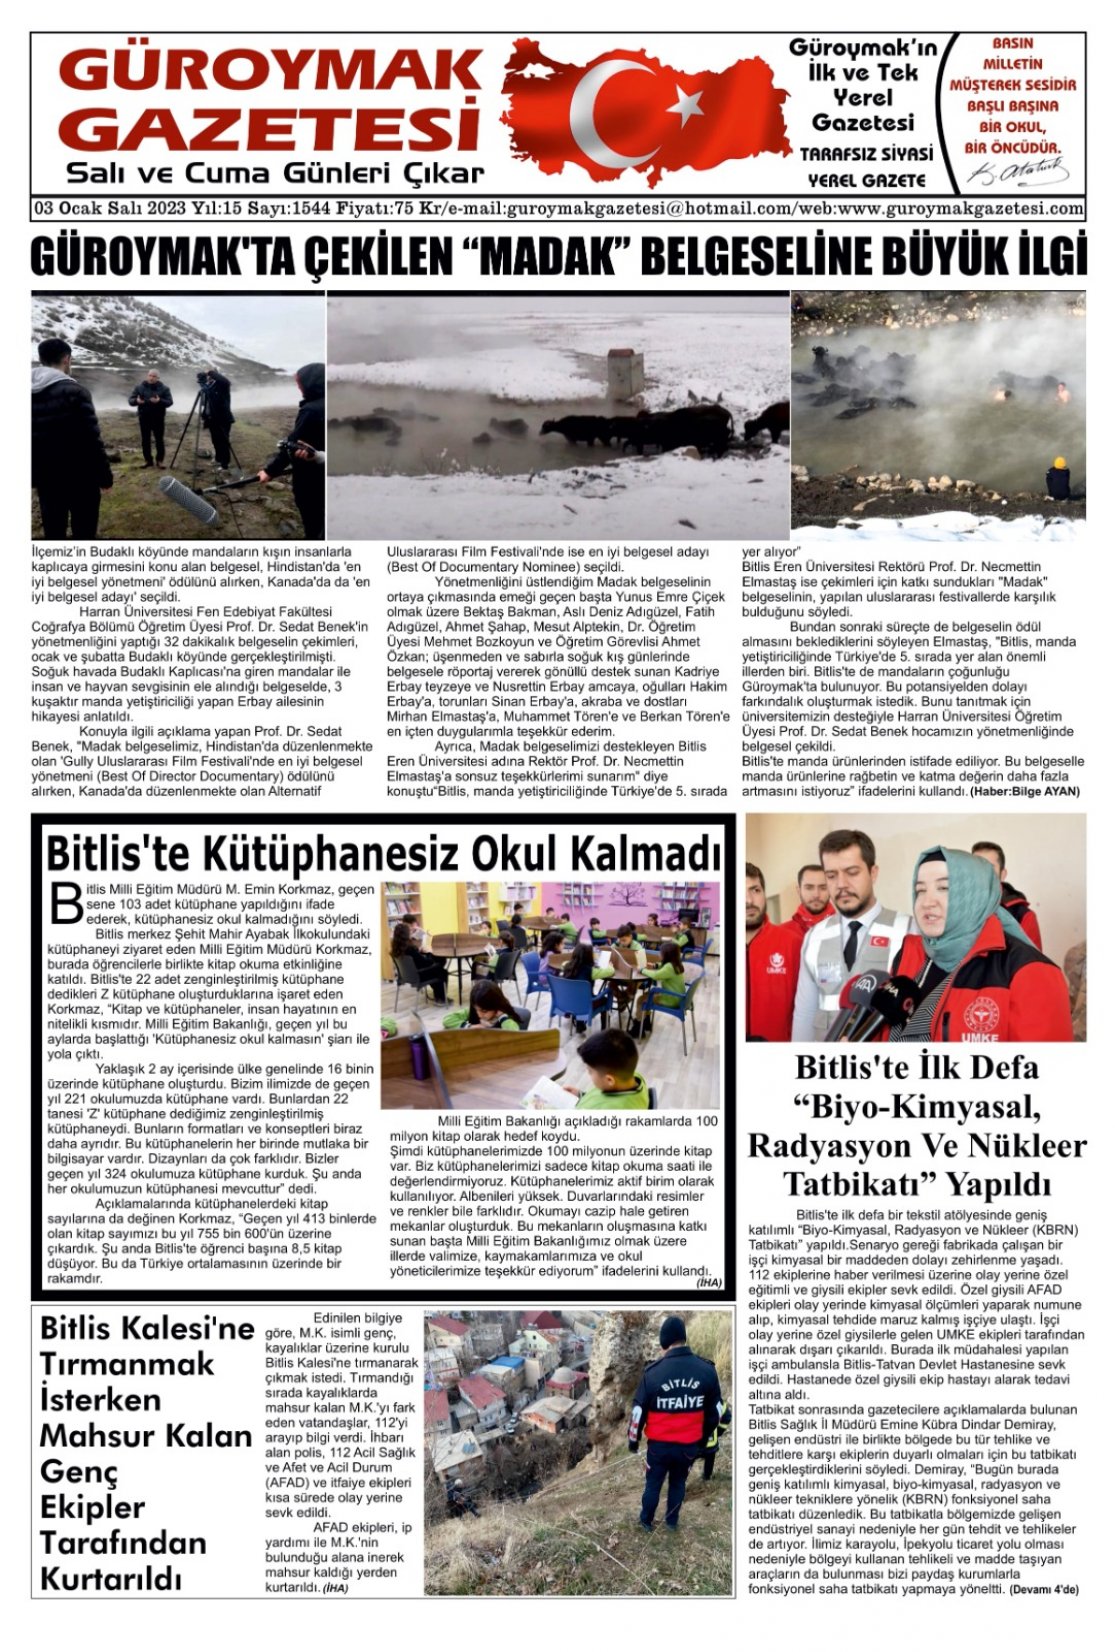 Güroymak Gazetesi WhatsApp Image 2023-01-02 at 22.09.57.jpeg Sayılı Gazete Küpürü